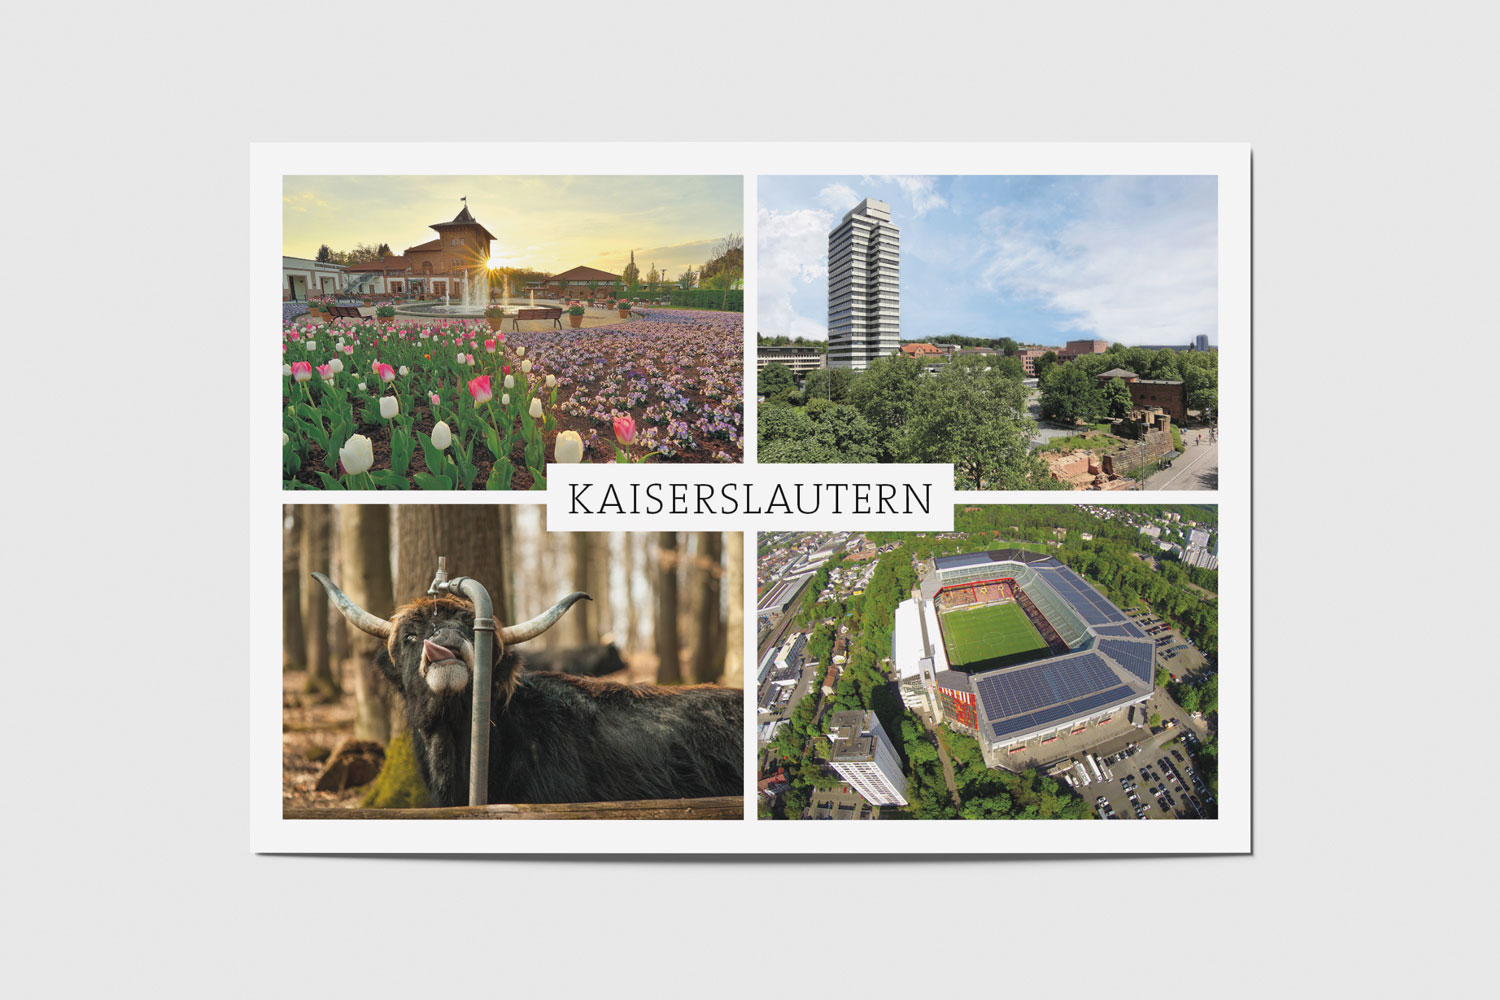 Kaiserslautern: Gartenschau, Rathaus, Wildpark, Stadion